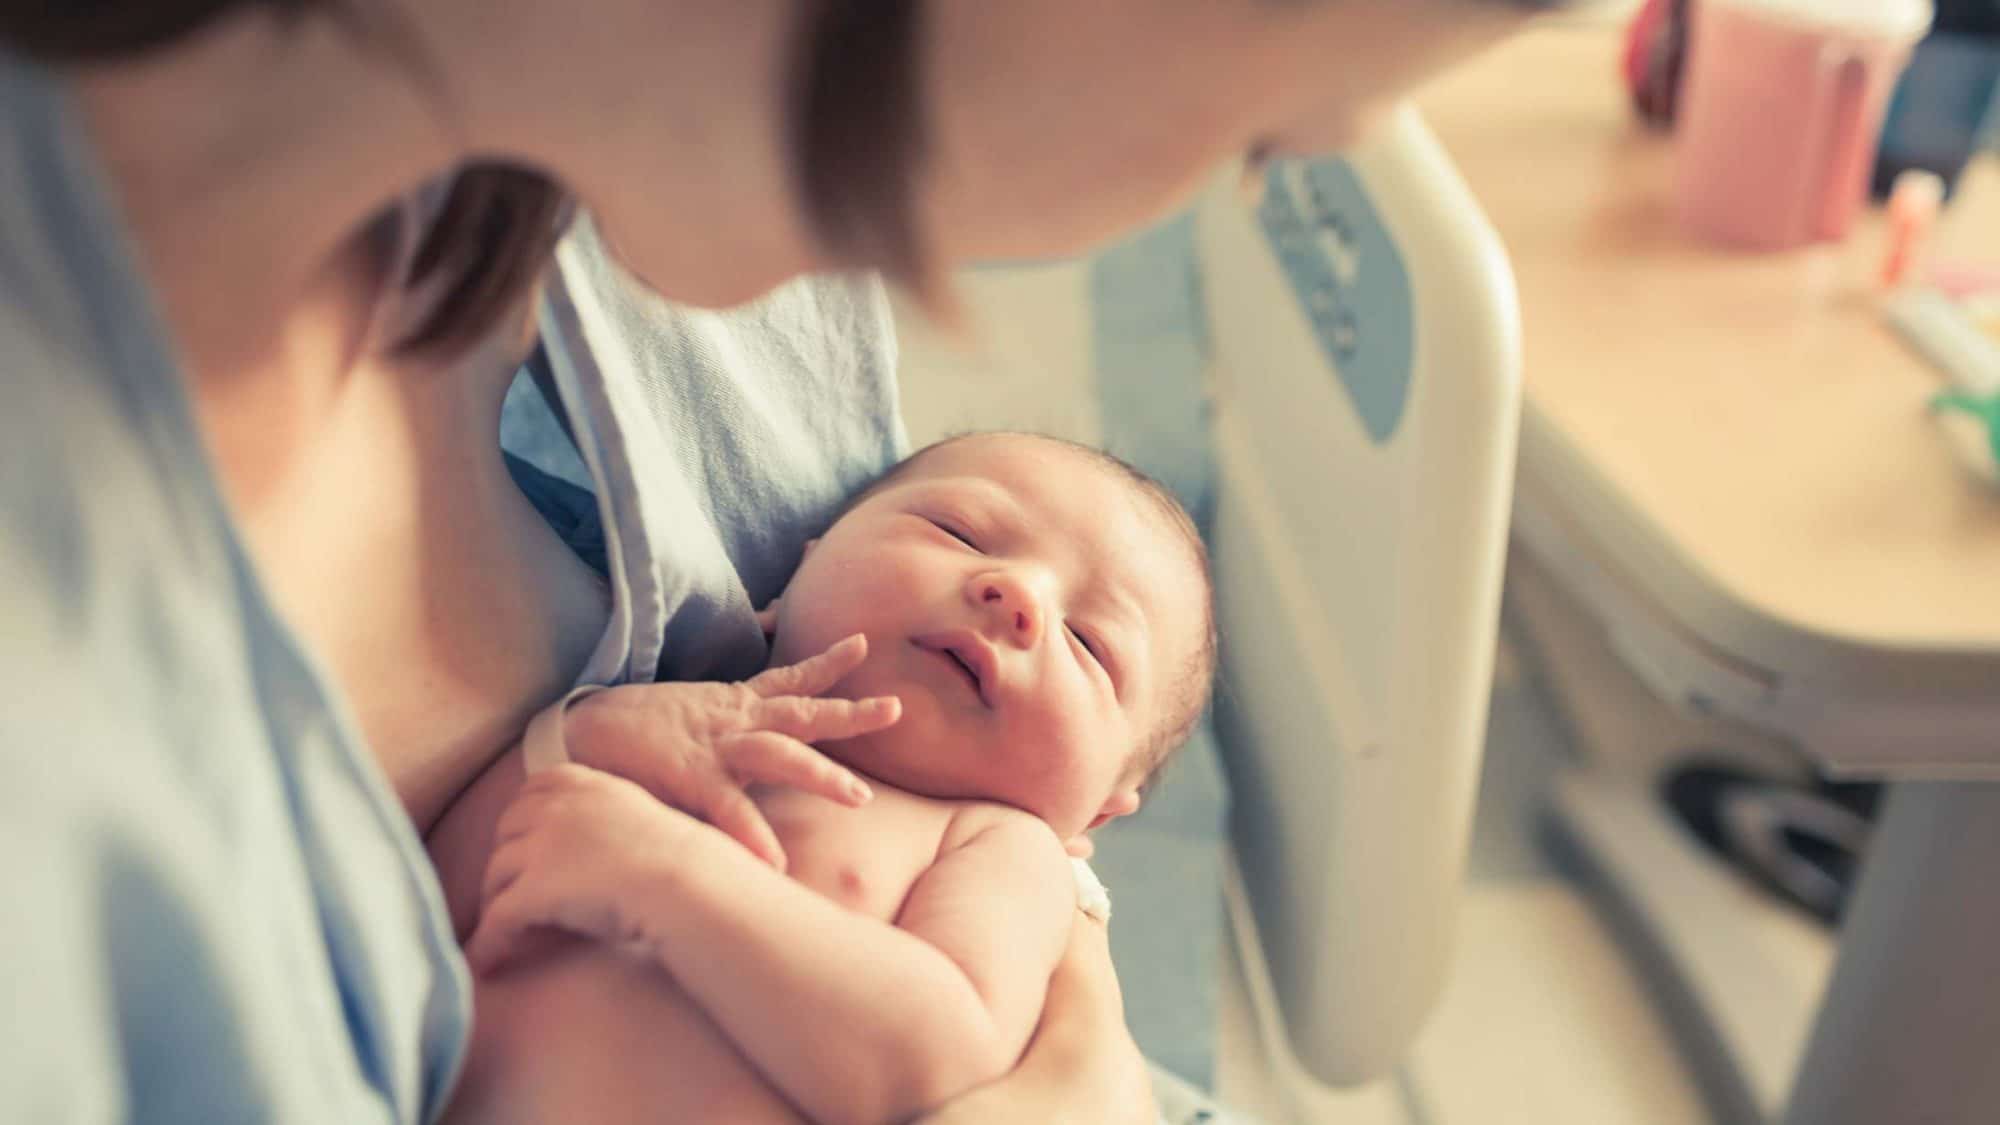 Kaiserschnitt Video: Ein neugeborenes Baby in den Armen seiner Mutter.